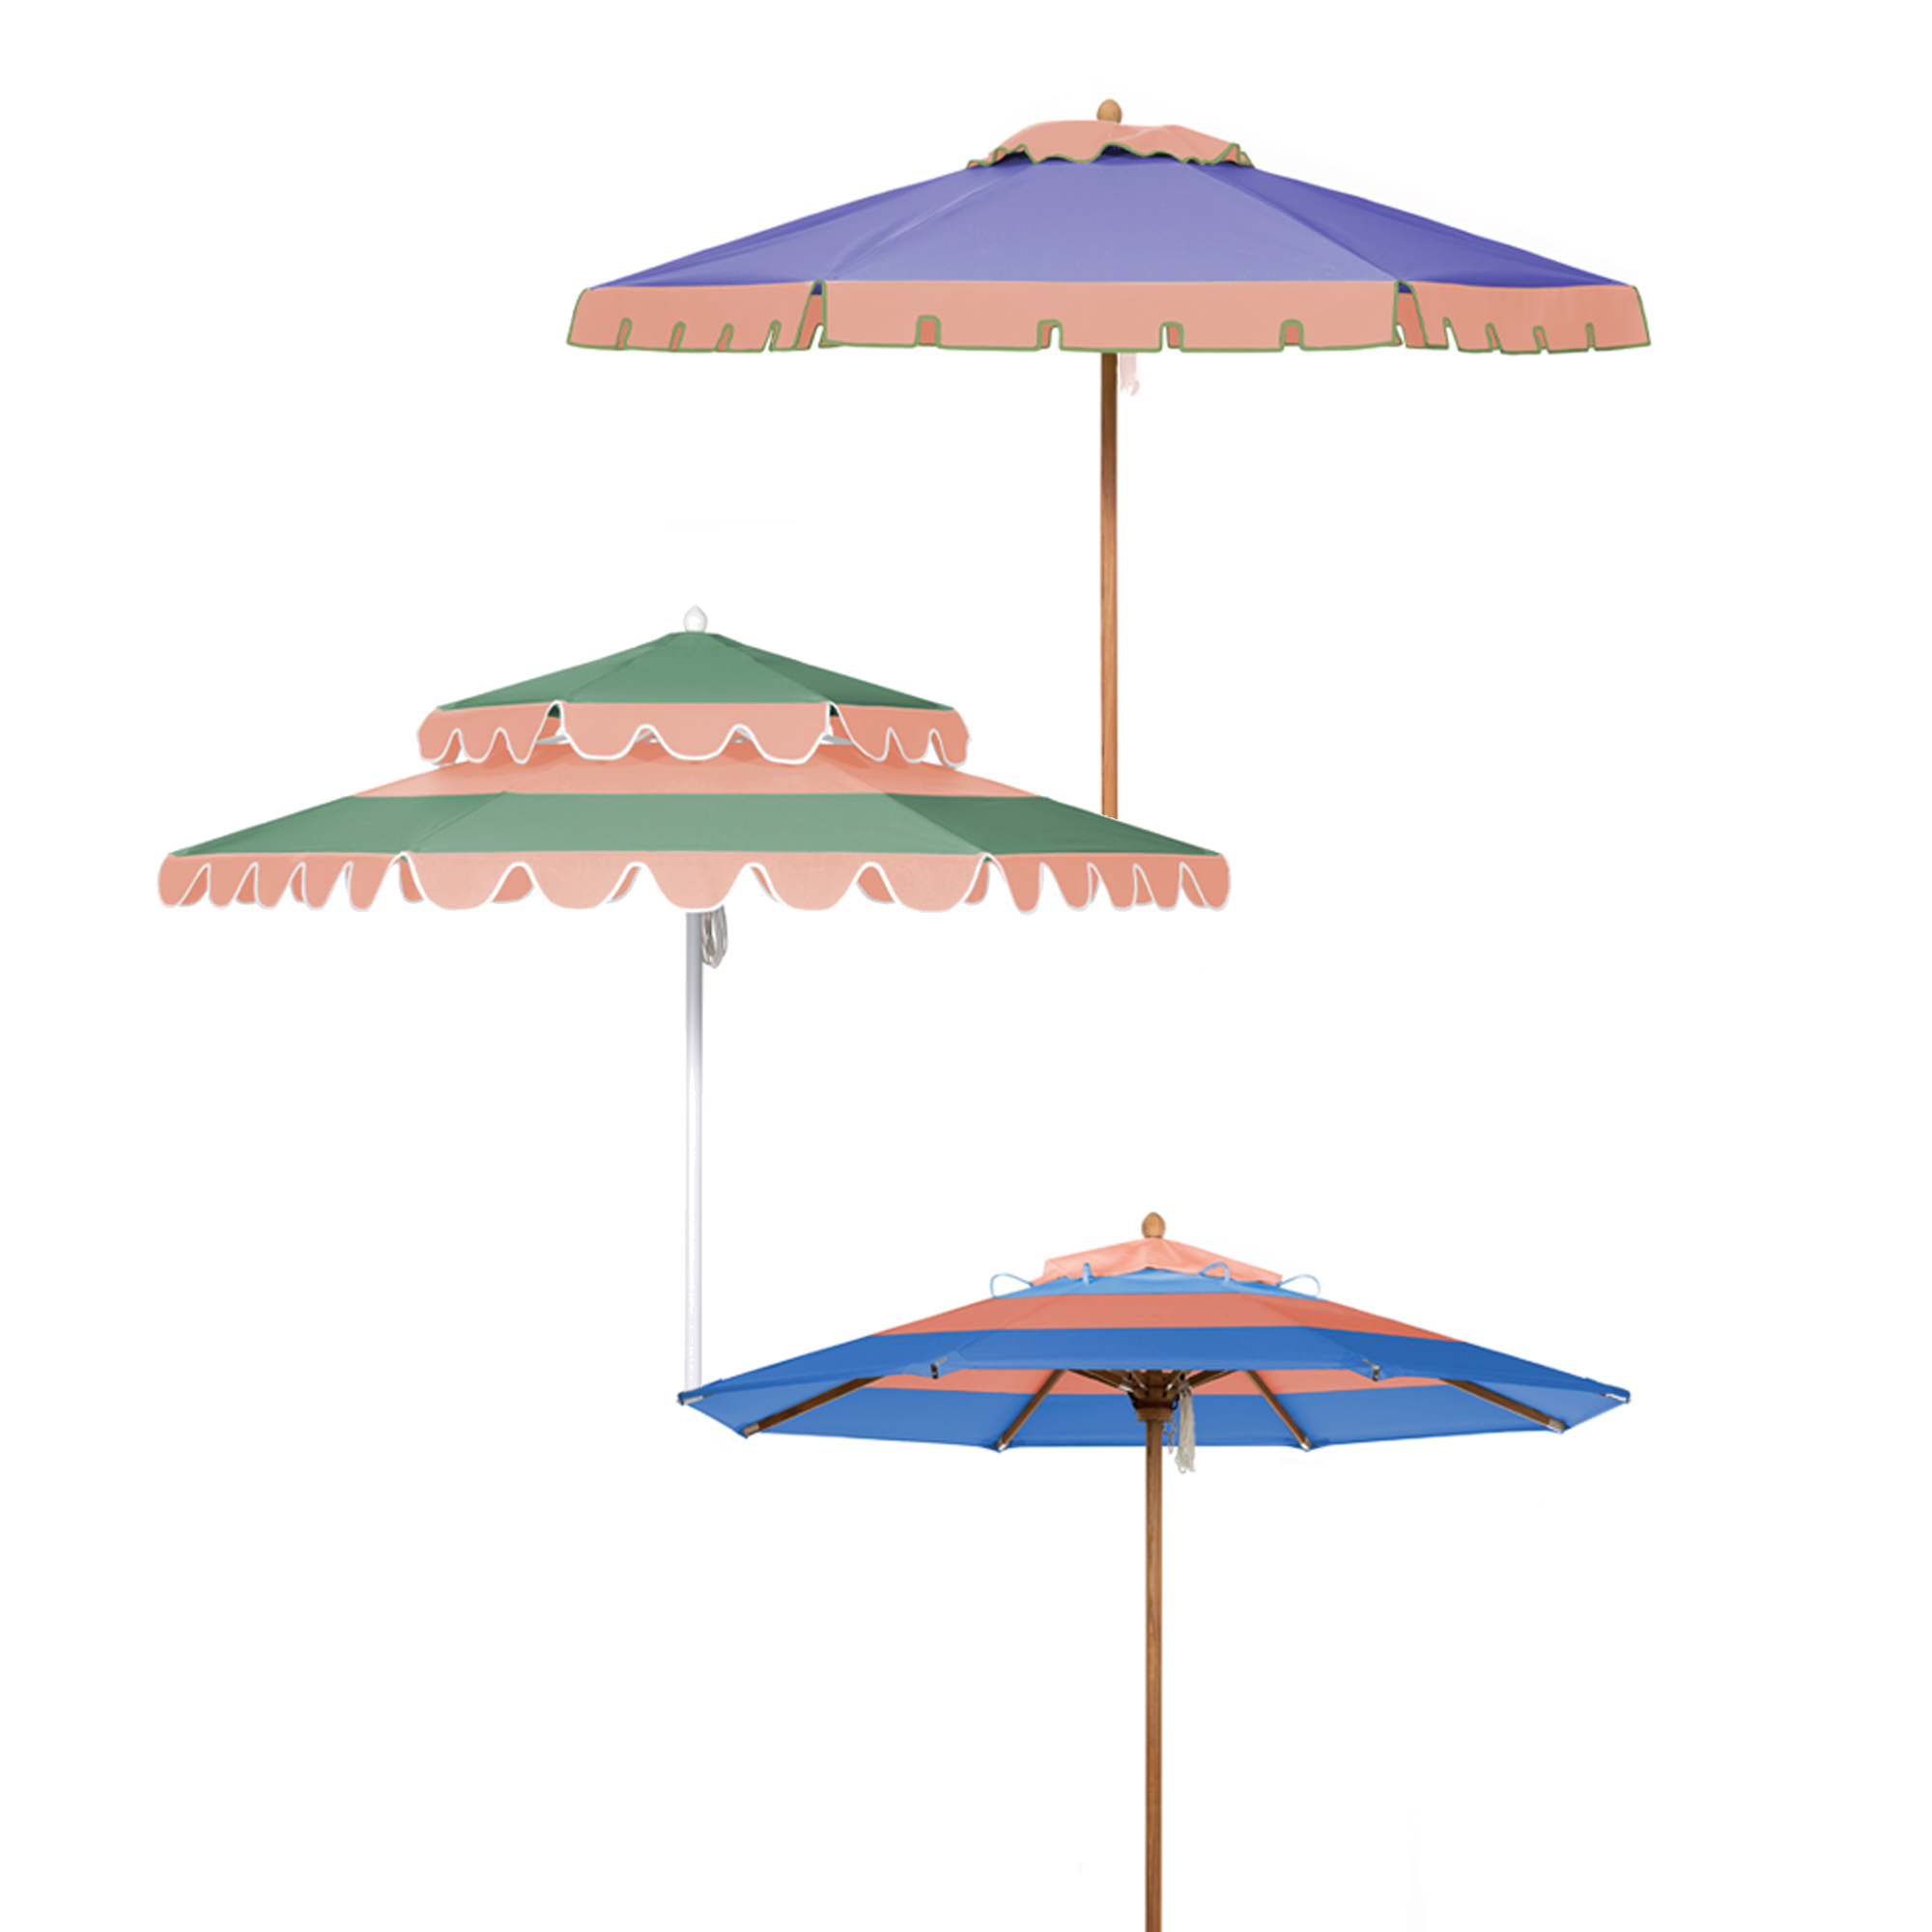 Vogue Collection Umbrellas Image